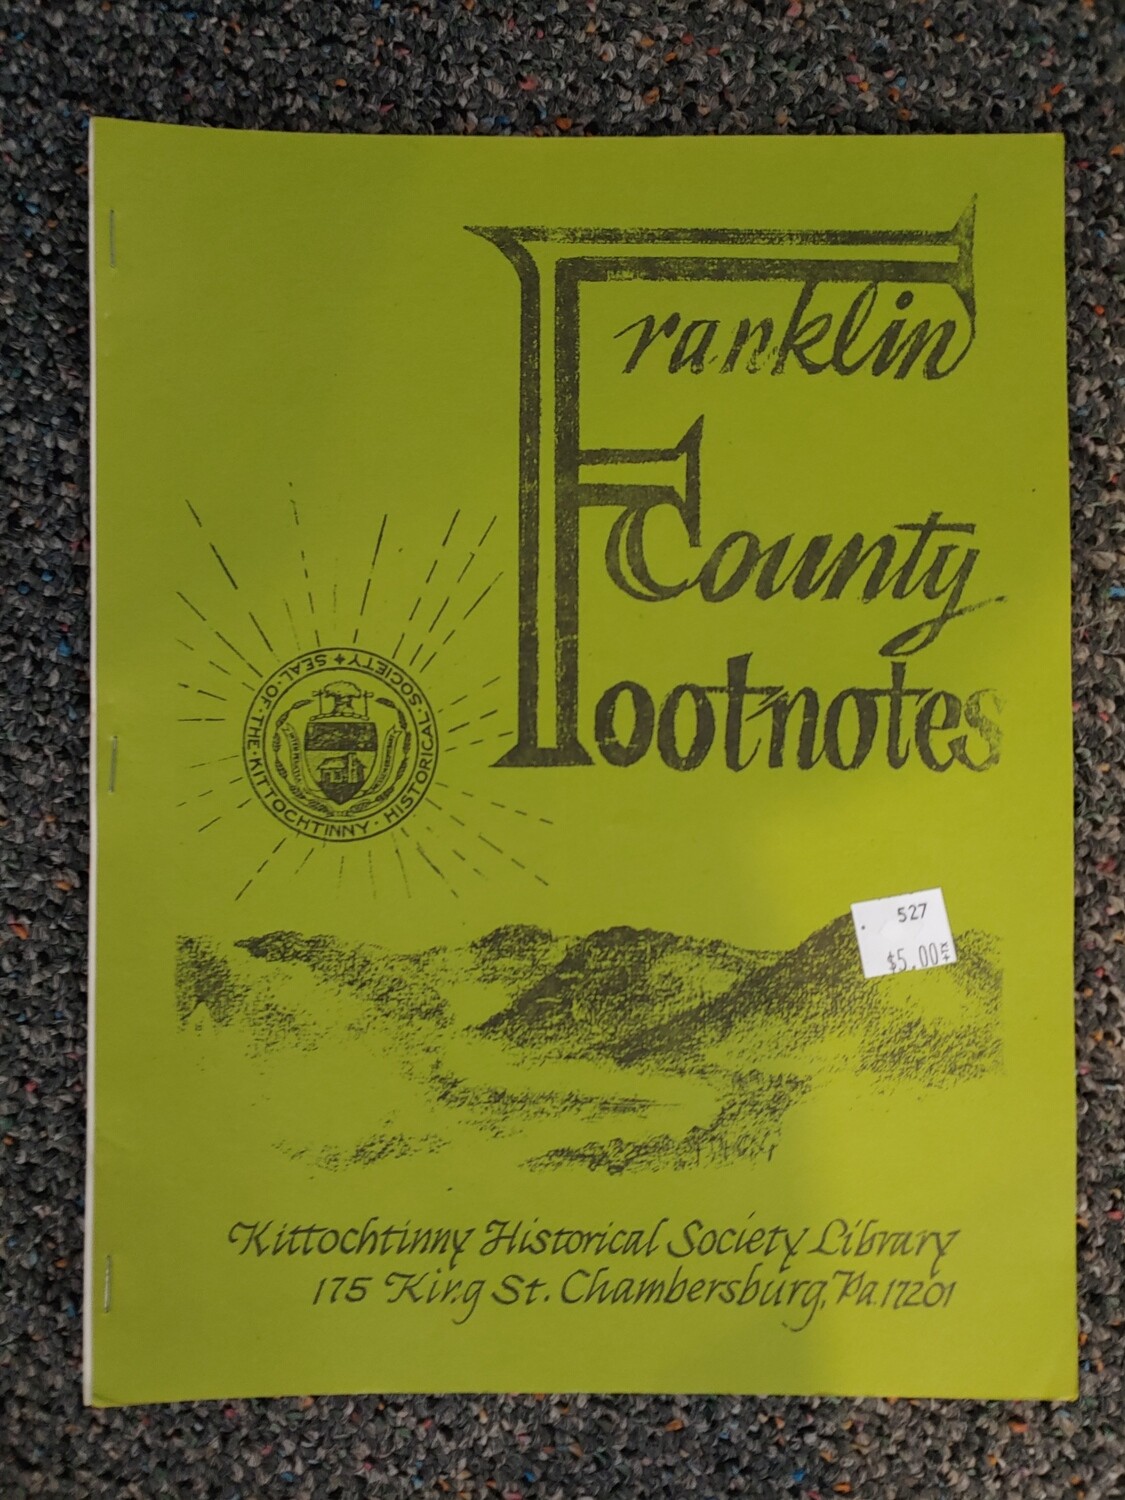 Franklin County Footnotes 1982 (KHS) Vol. 3 No. 2